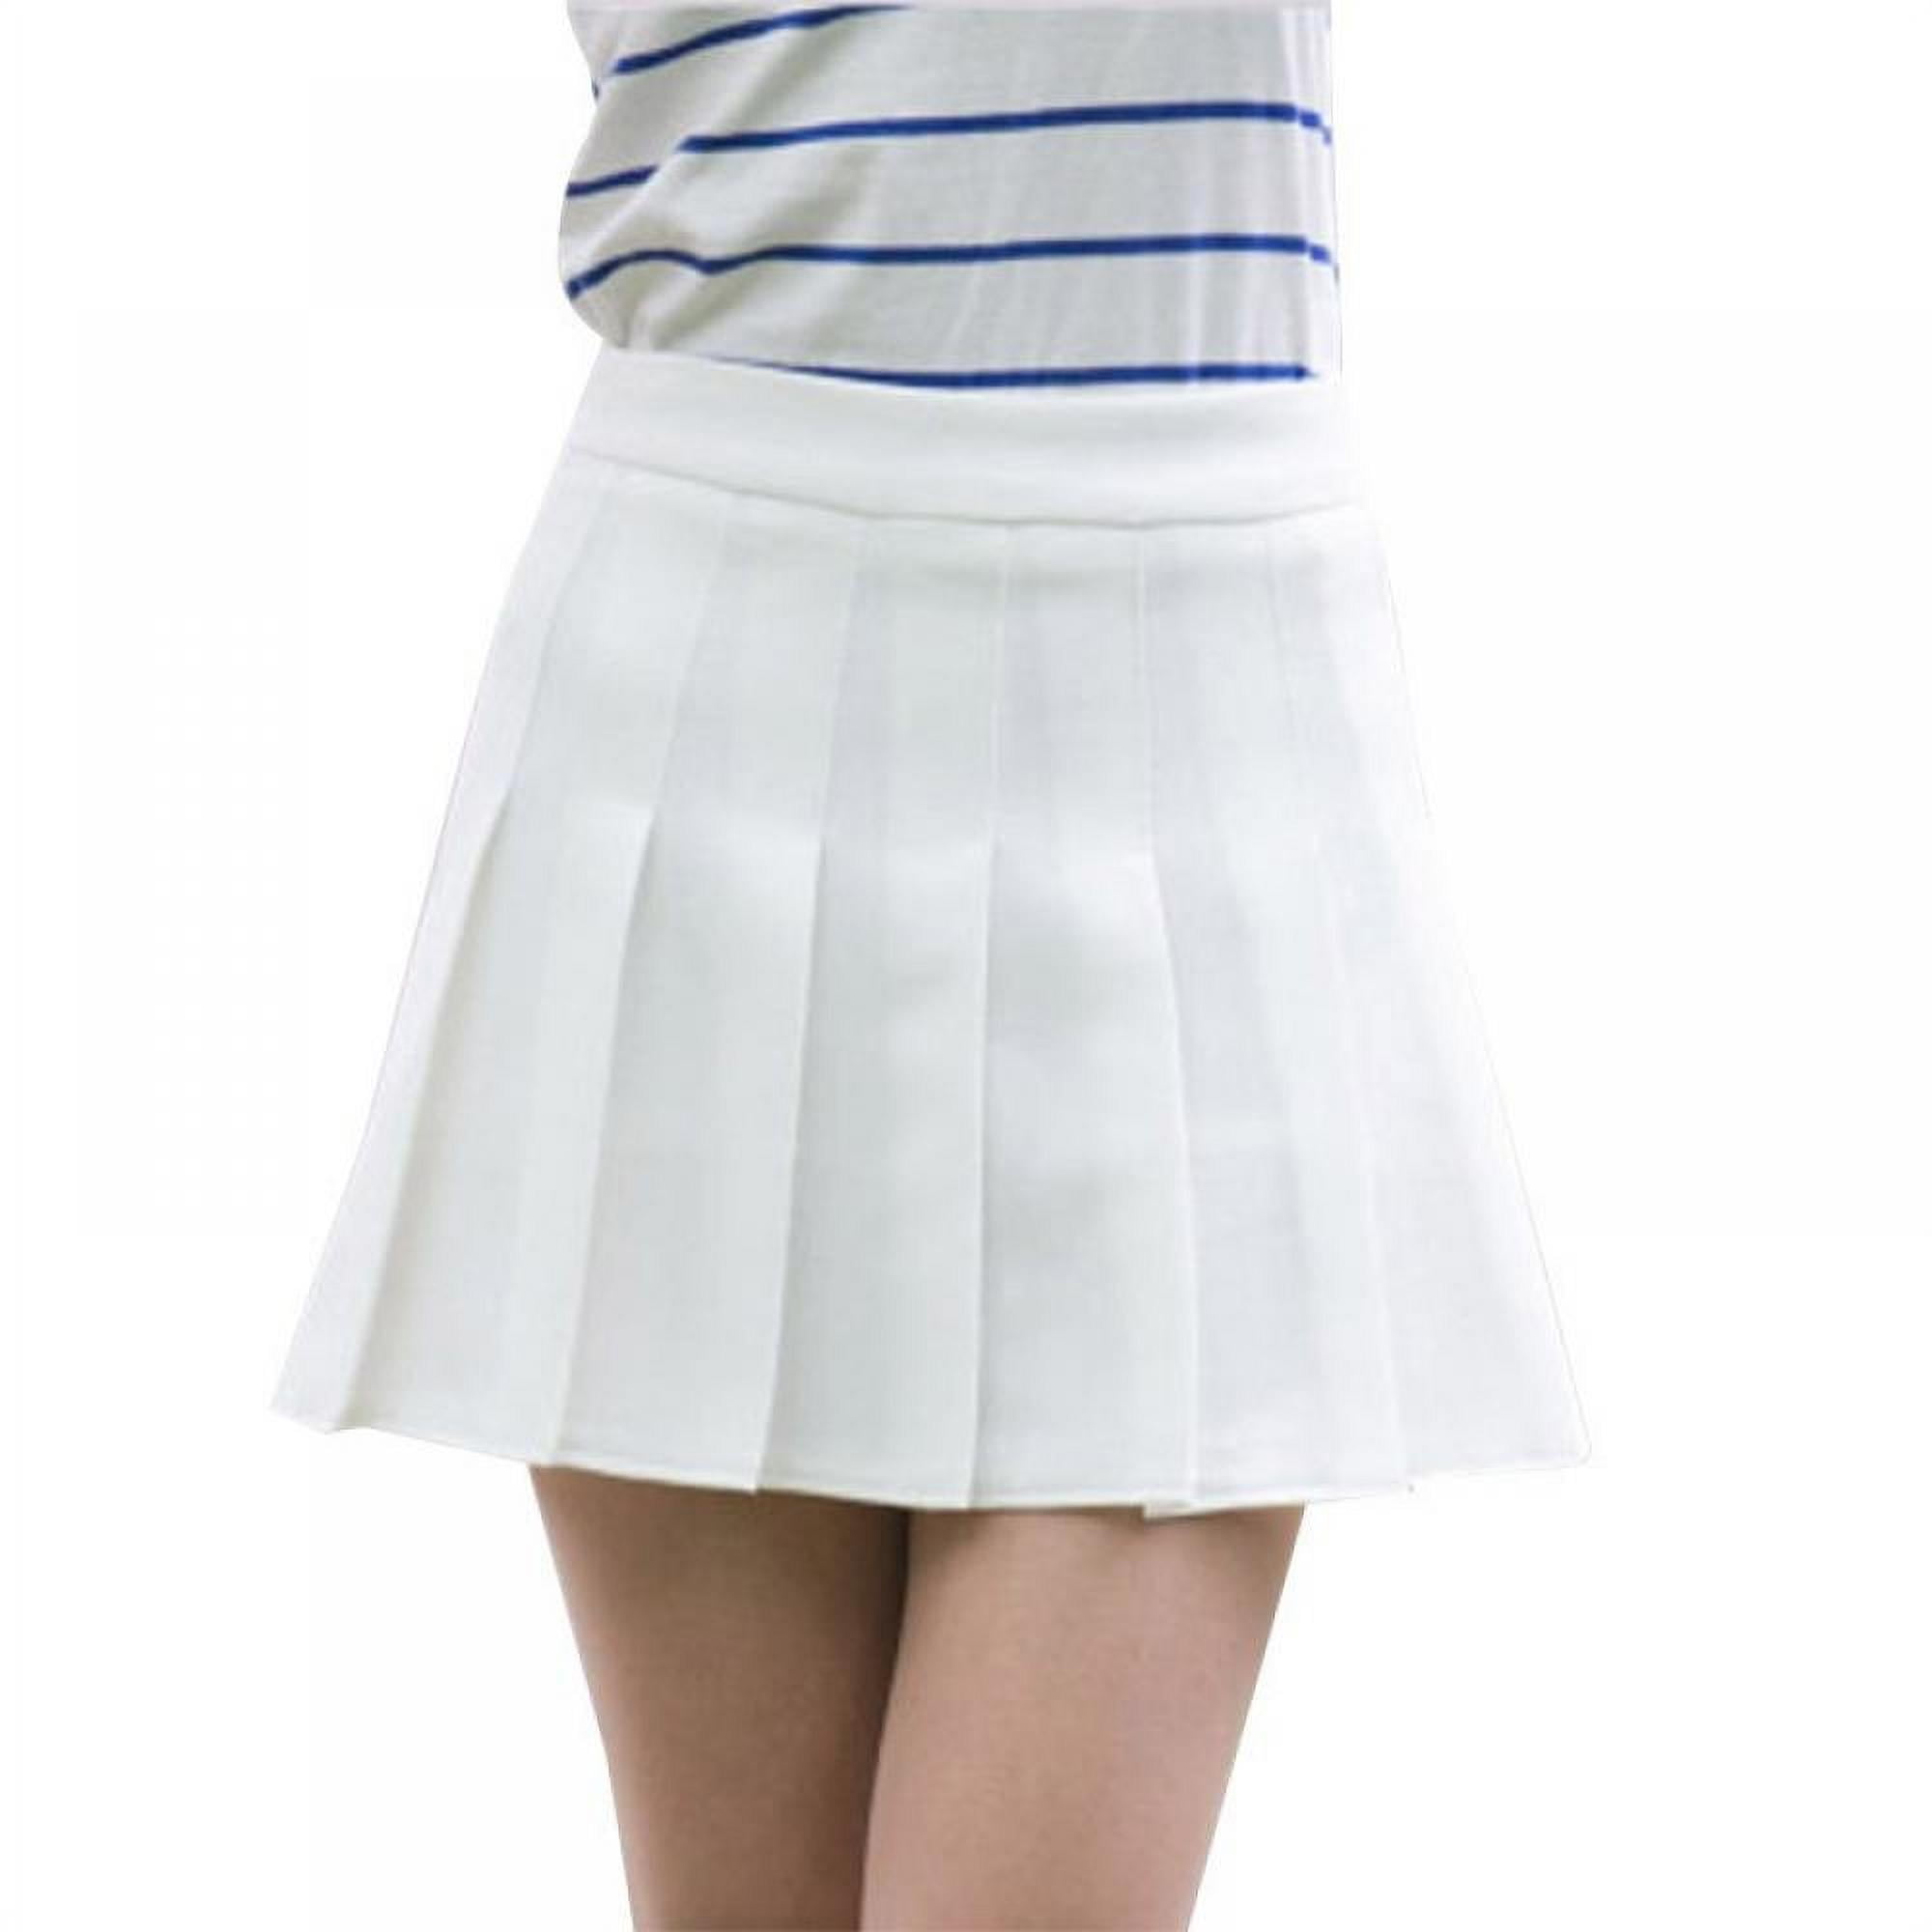 Girls Women's Pleated Skirt Anti-glare High Waisted College Skater Tennis  School A-Line Skirt Uniform Skirts Student Skirt,S-XL,White